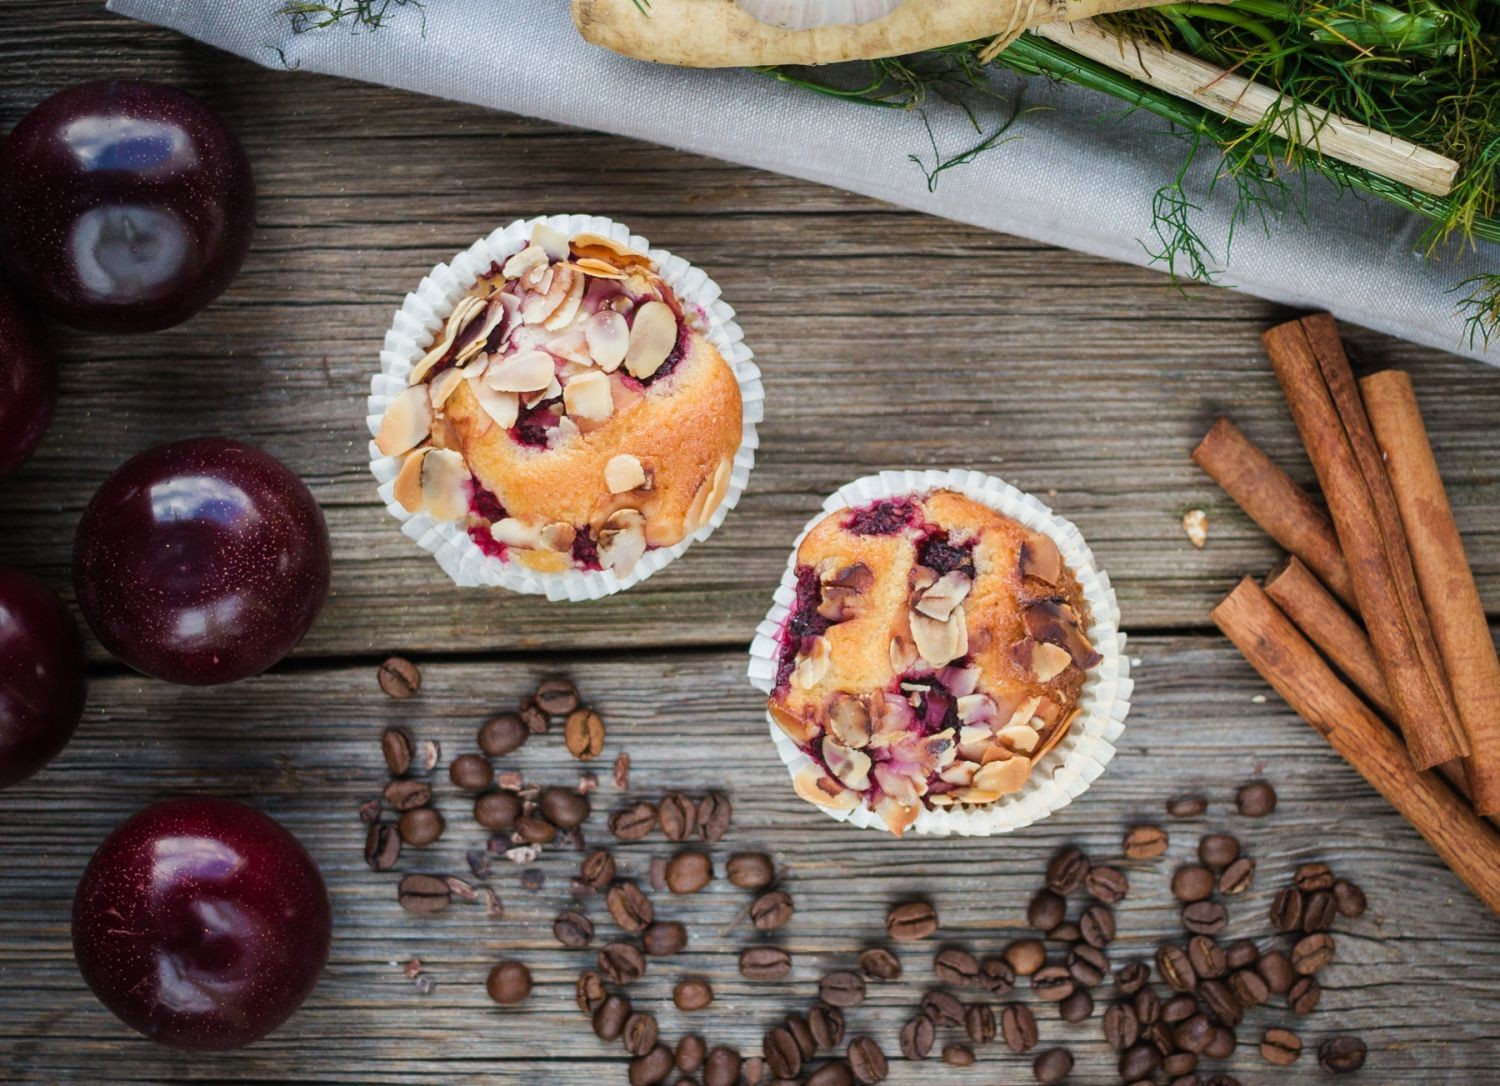 FIT DESER: Dietetyczne muffiny z wiśniami